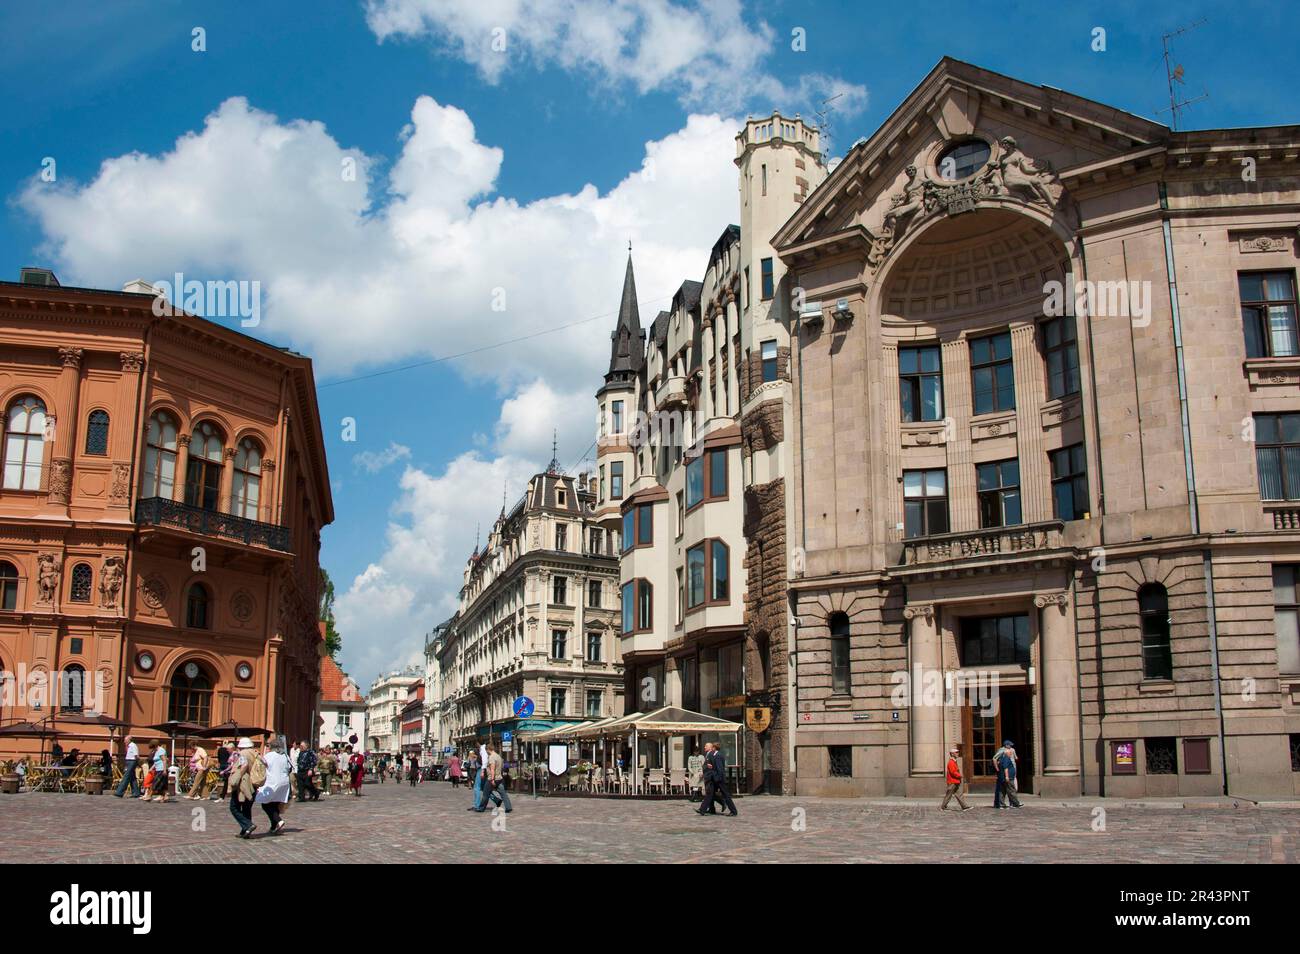 Place de la cathédrale, vieille ville, Riga, Lettonie, États baltes, Europe, Bourse de Riga et Maison de radio lettonne, Doma Laukums Banque D'Images